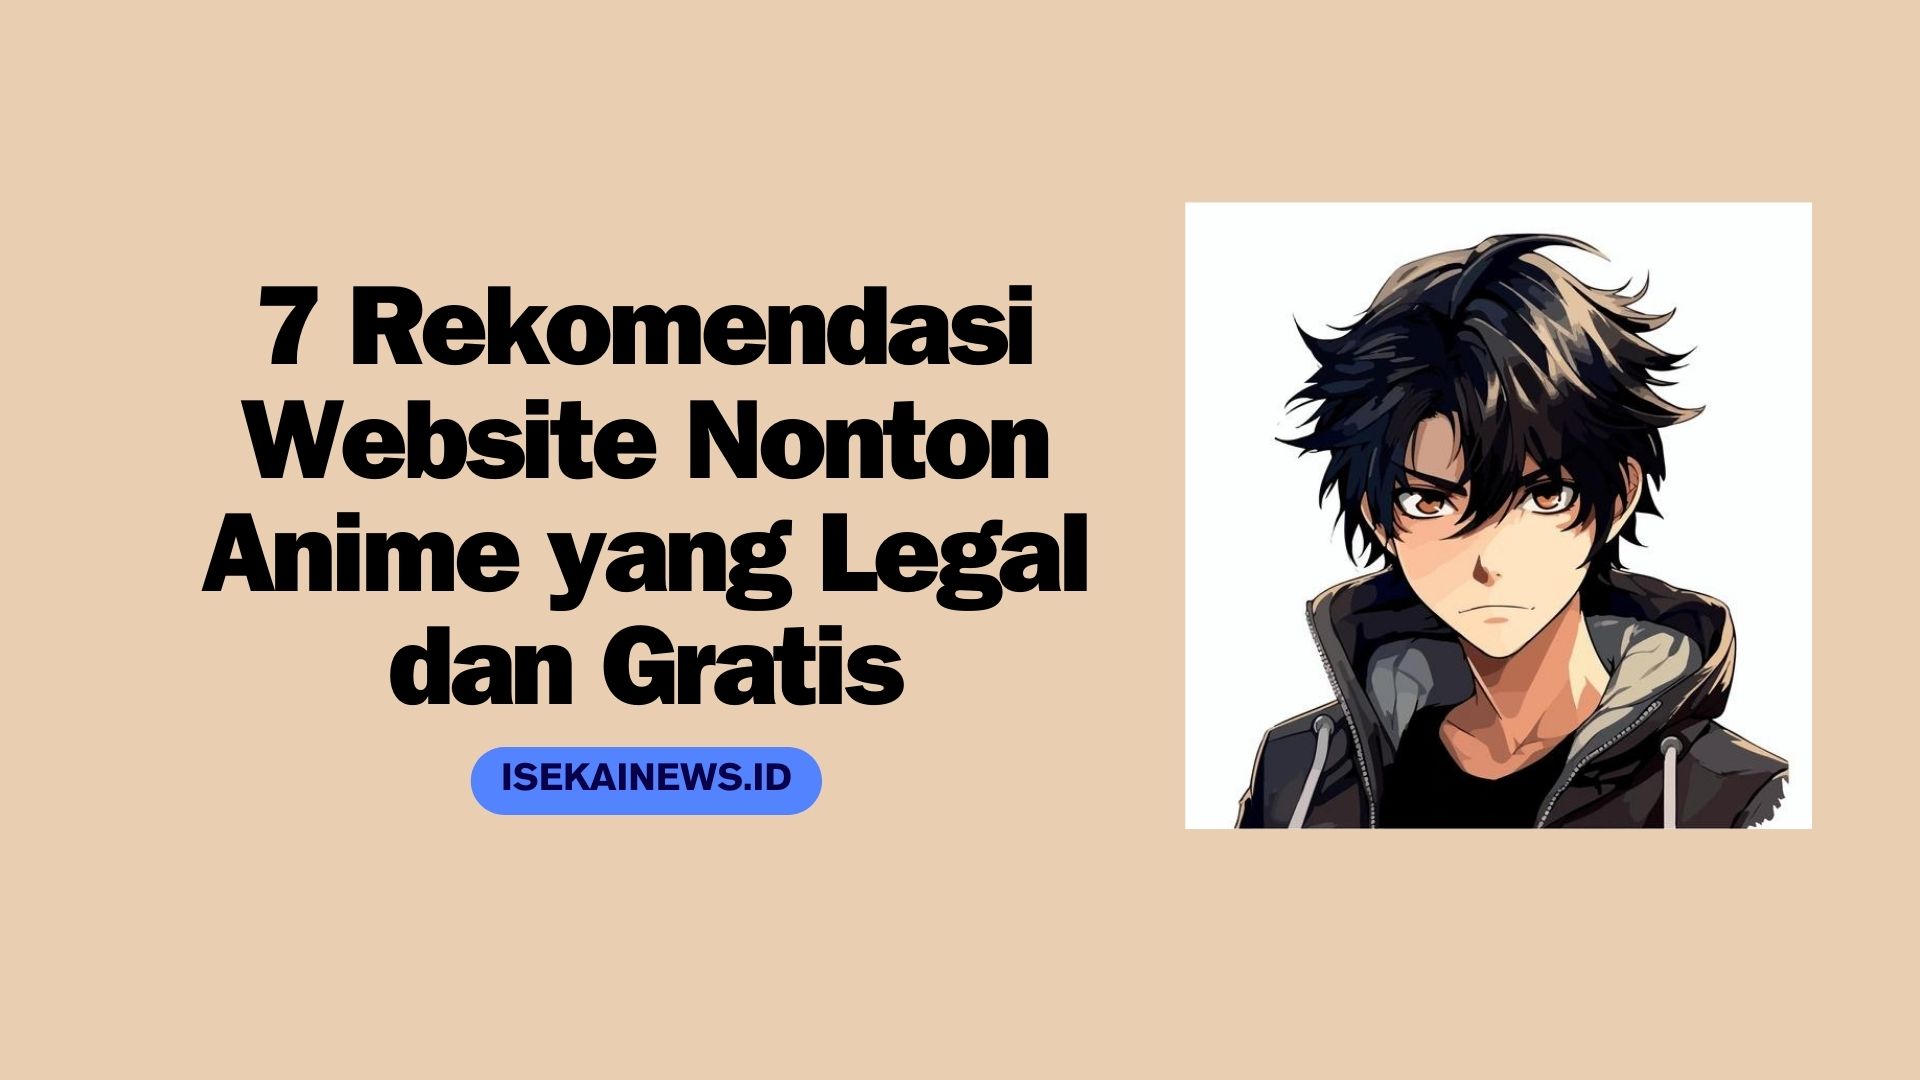 7 Rekomendasi Website Nonton Anime yang Legal dan Gratis